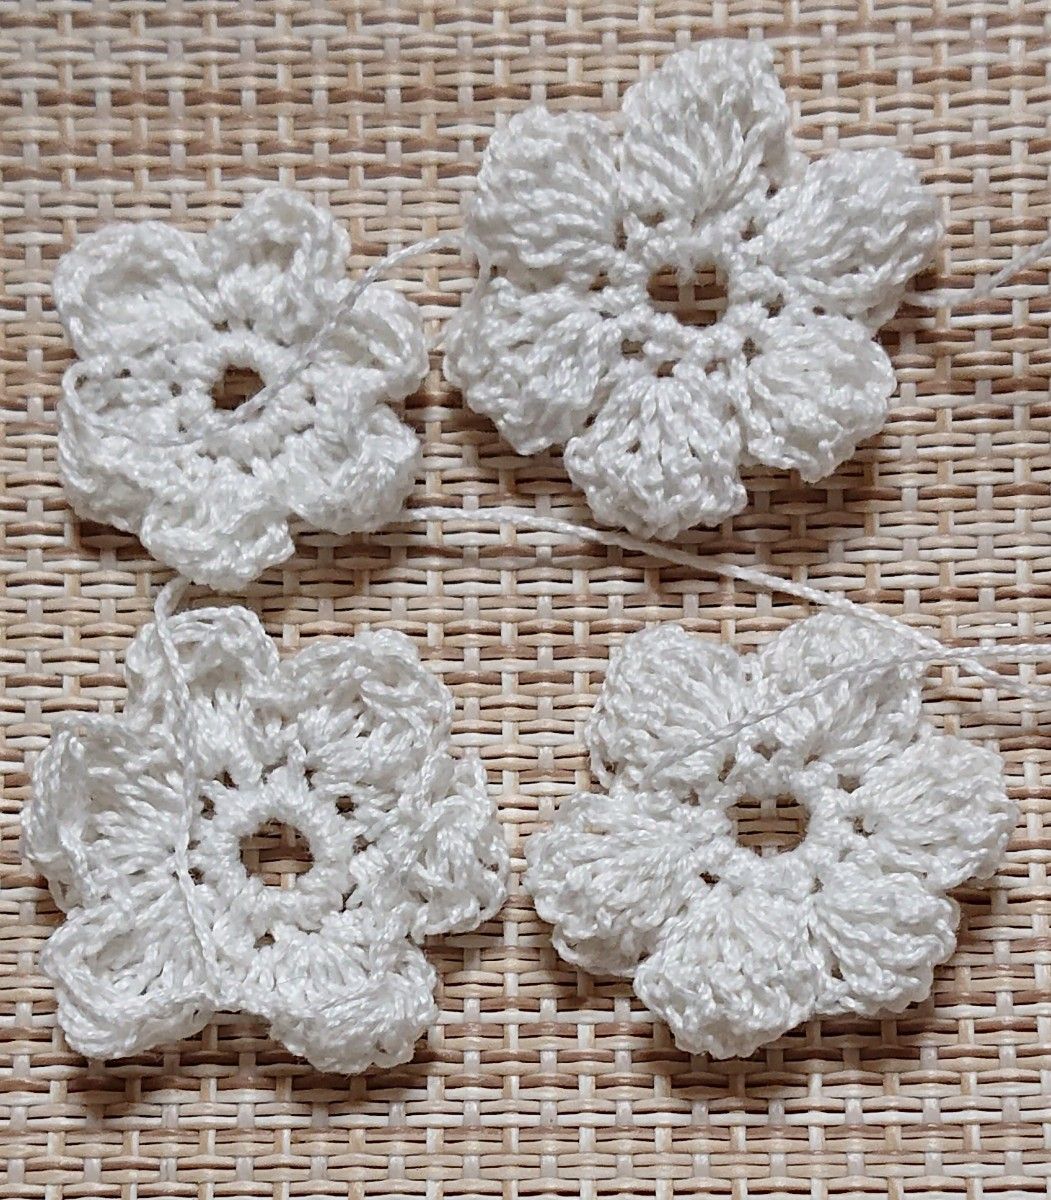 284《レースの花》 15個 ホワイト 立体 3D 形いろいろ マーガレット型 ハンドメイド レース編み 手編み モチーフ